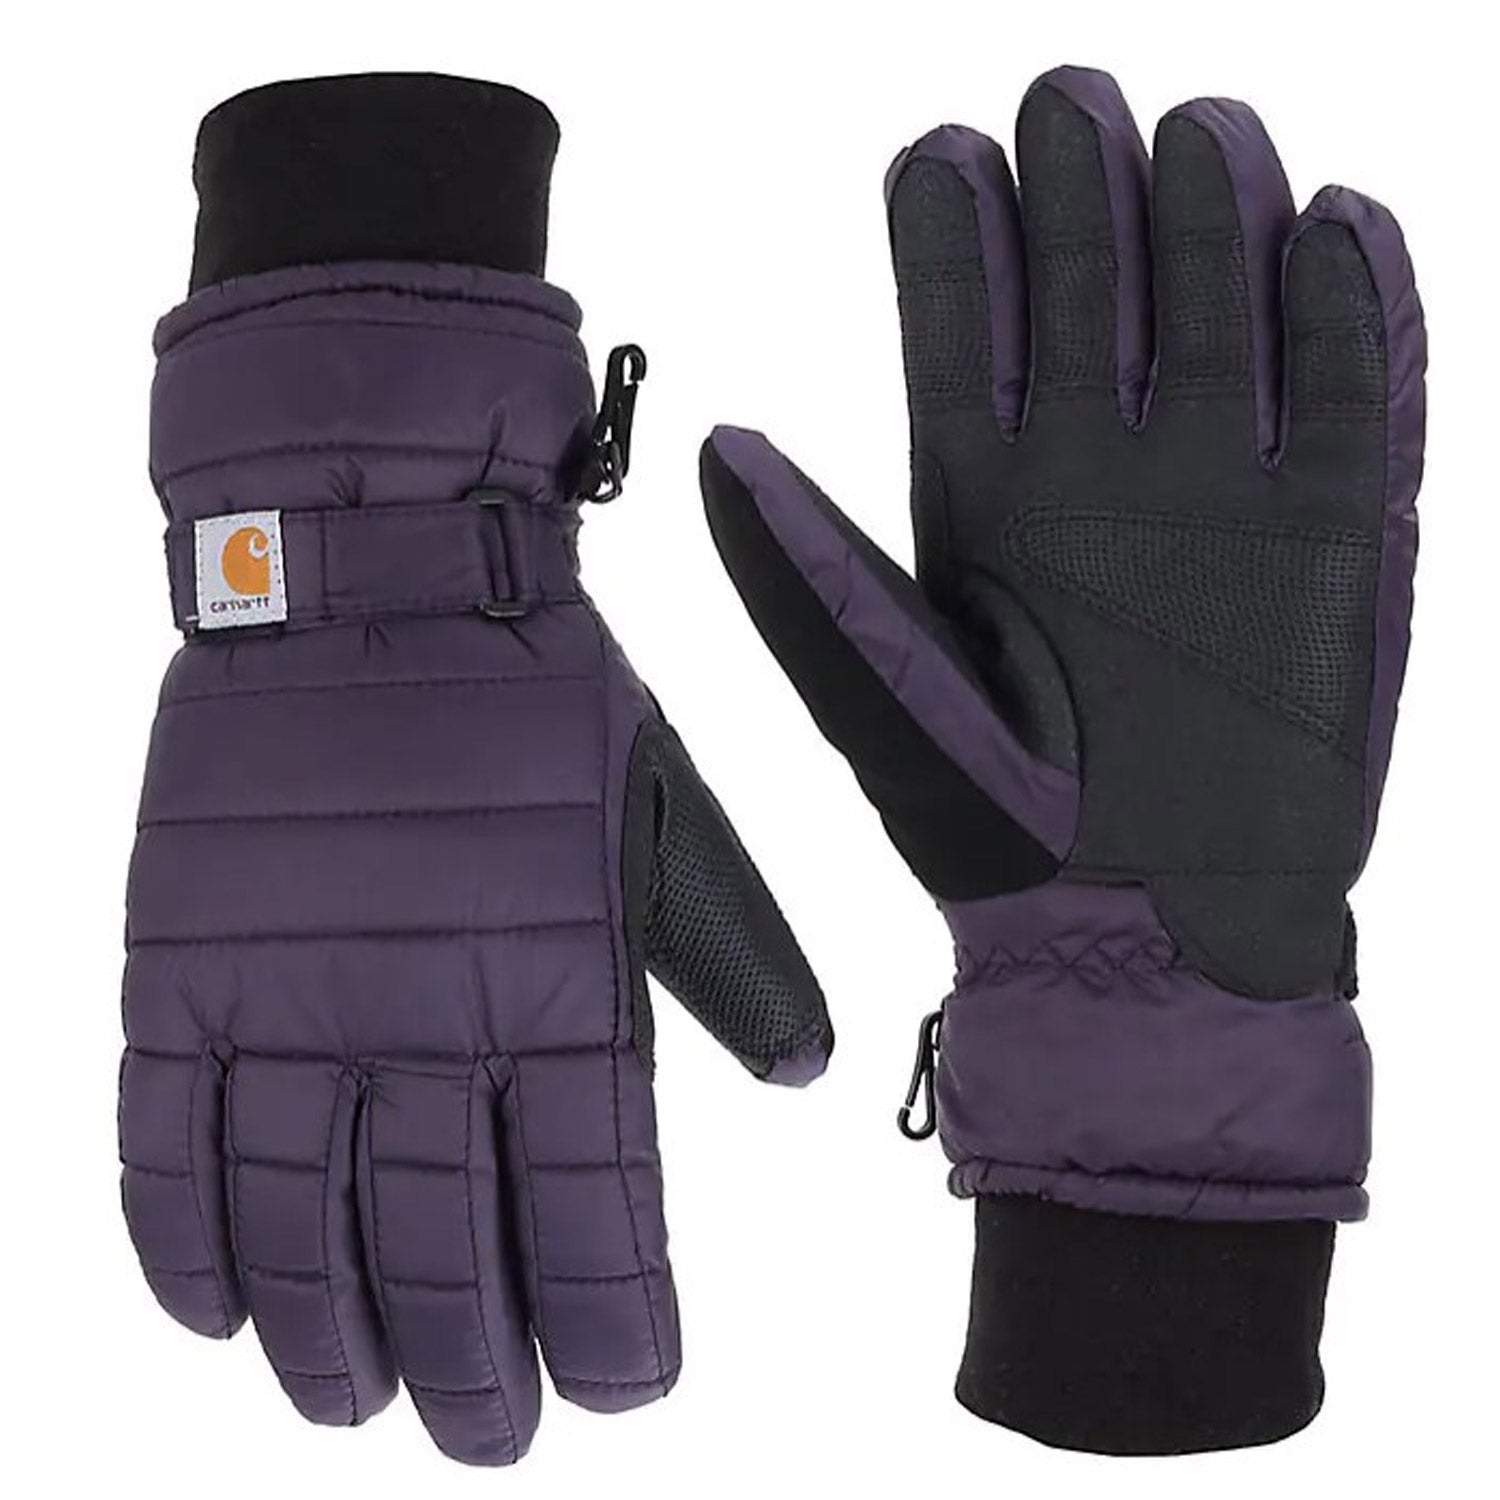 Carhartt Women's Waterproof Quilted Glove - Work World - Workwear, Work Boots, Safety Gear